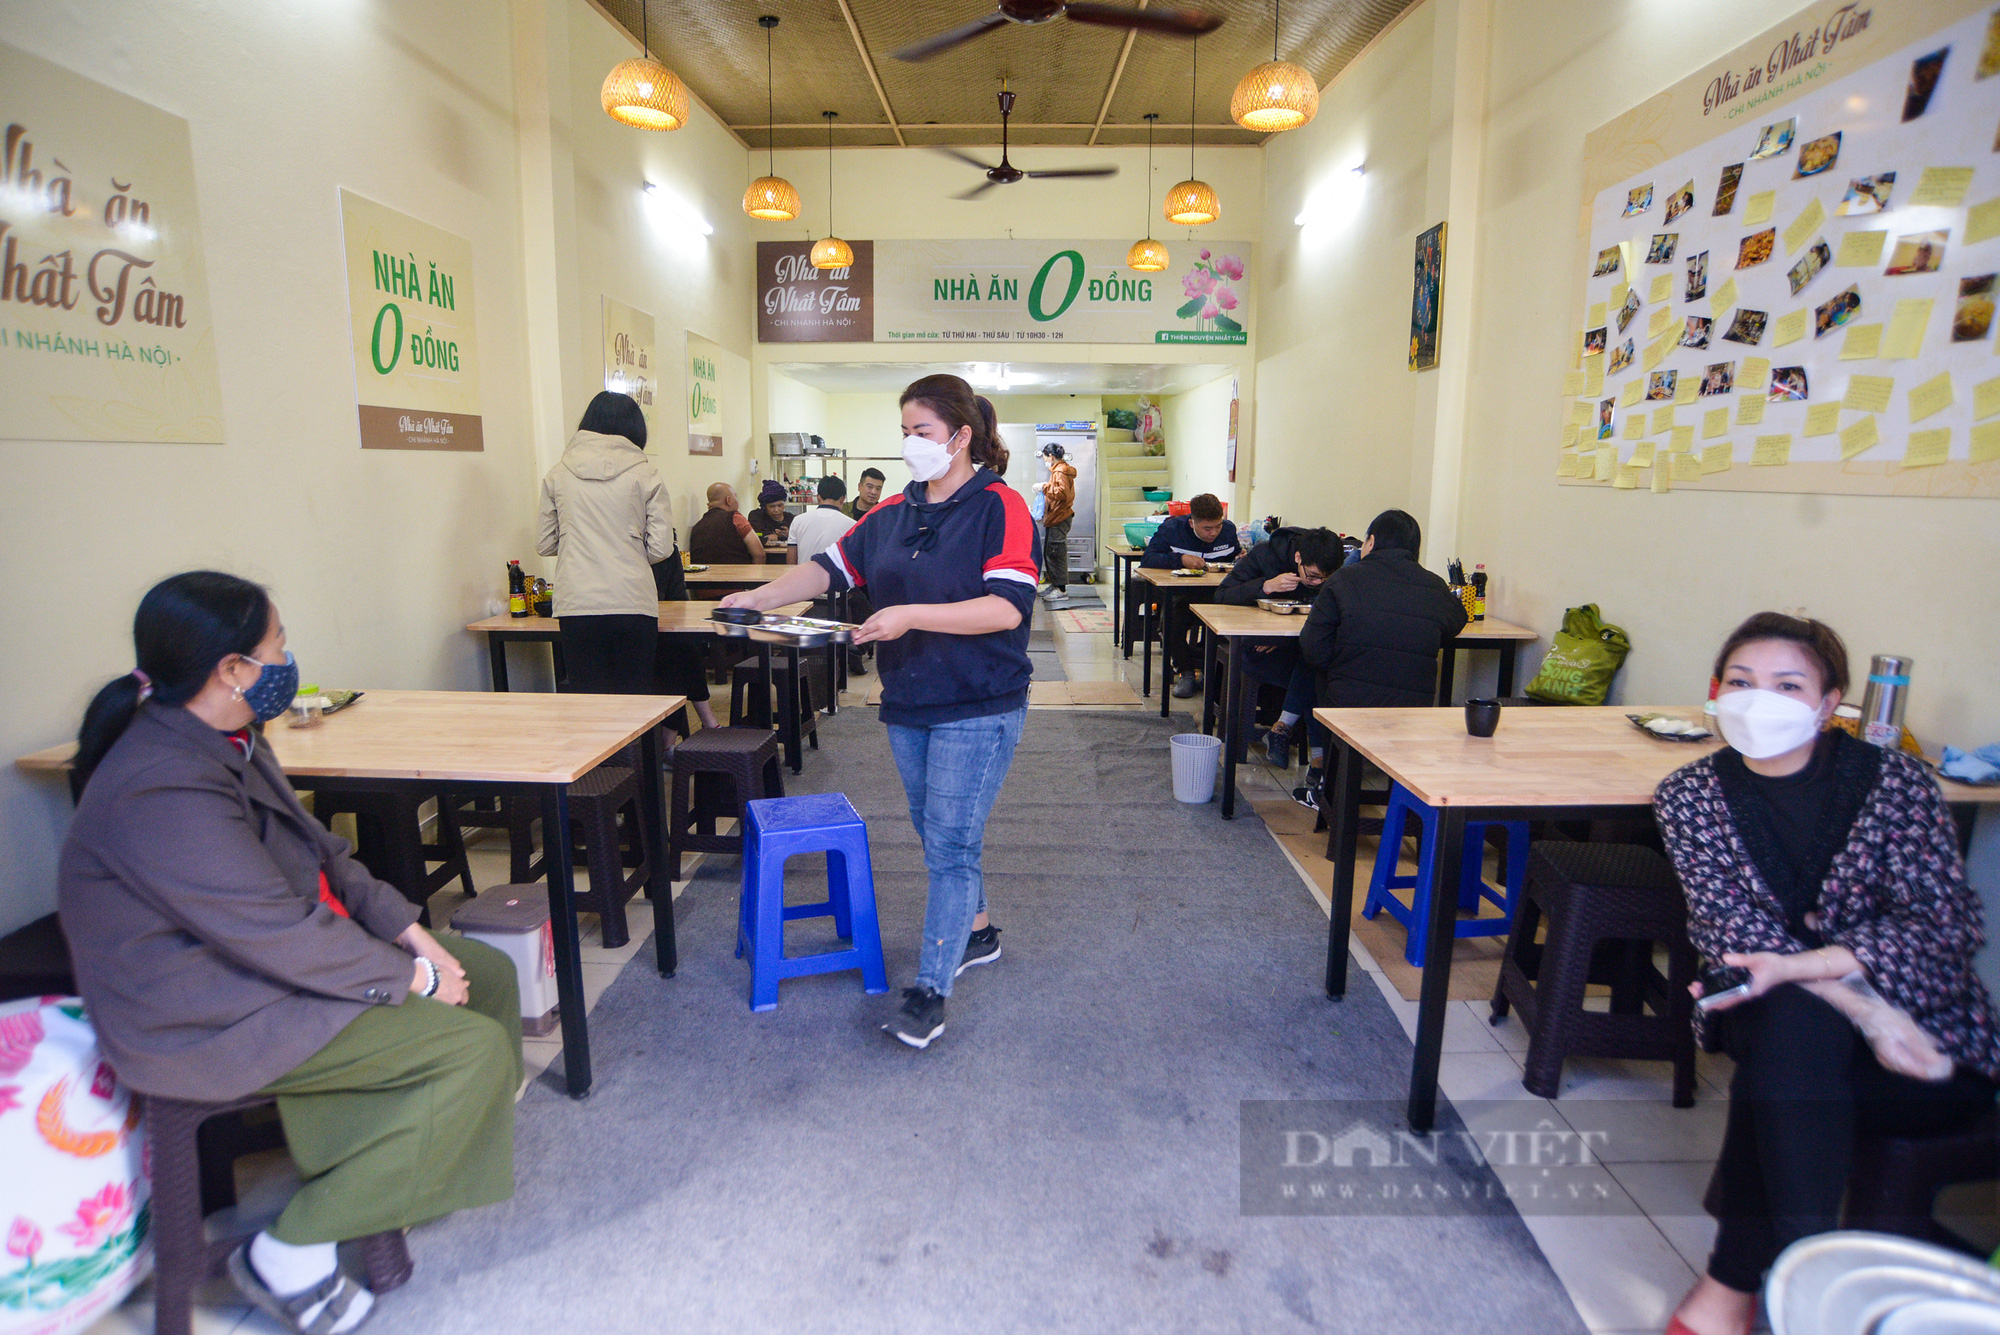 Quán ăn chay tại Hà Nội phục vụ 200 suất ăn mỗi ngày với giá 0 đồng  - Ảnh 2.